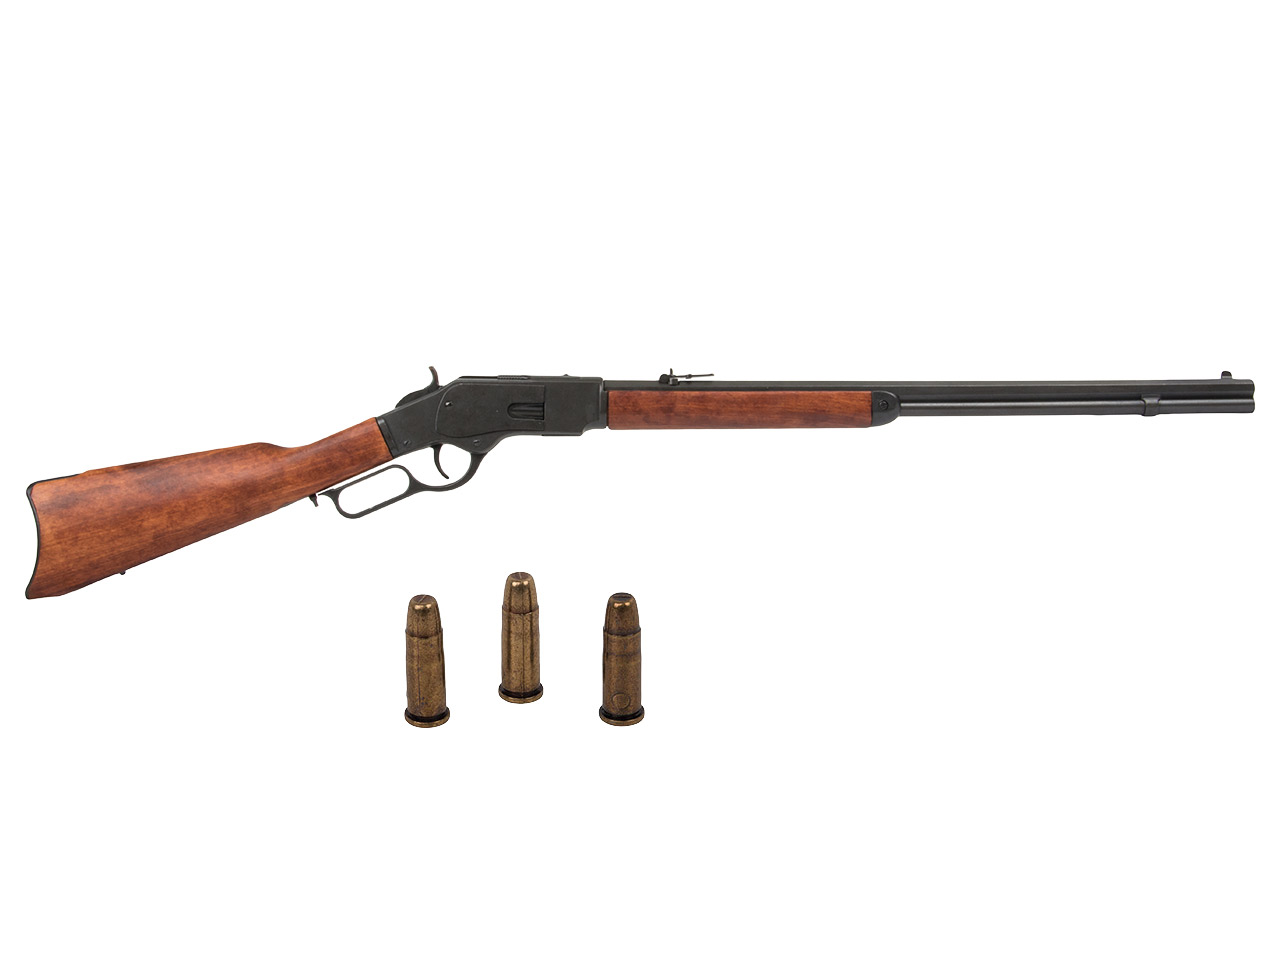 Deko Westerngewehr Denix Winchester Mod. 73 USA 1873 schwarz realistisches Repetieren mit Hülsenauswurf Gesamtlänge 110 cm